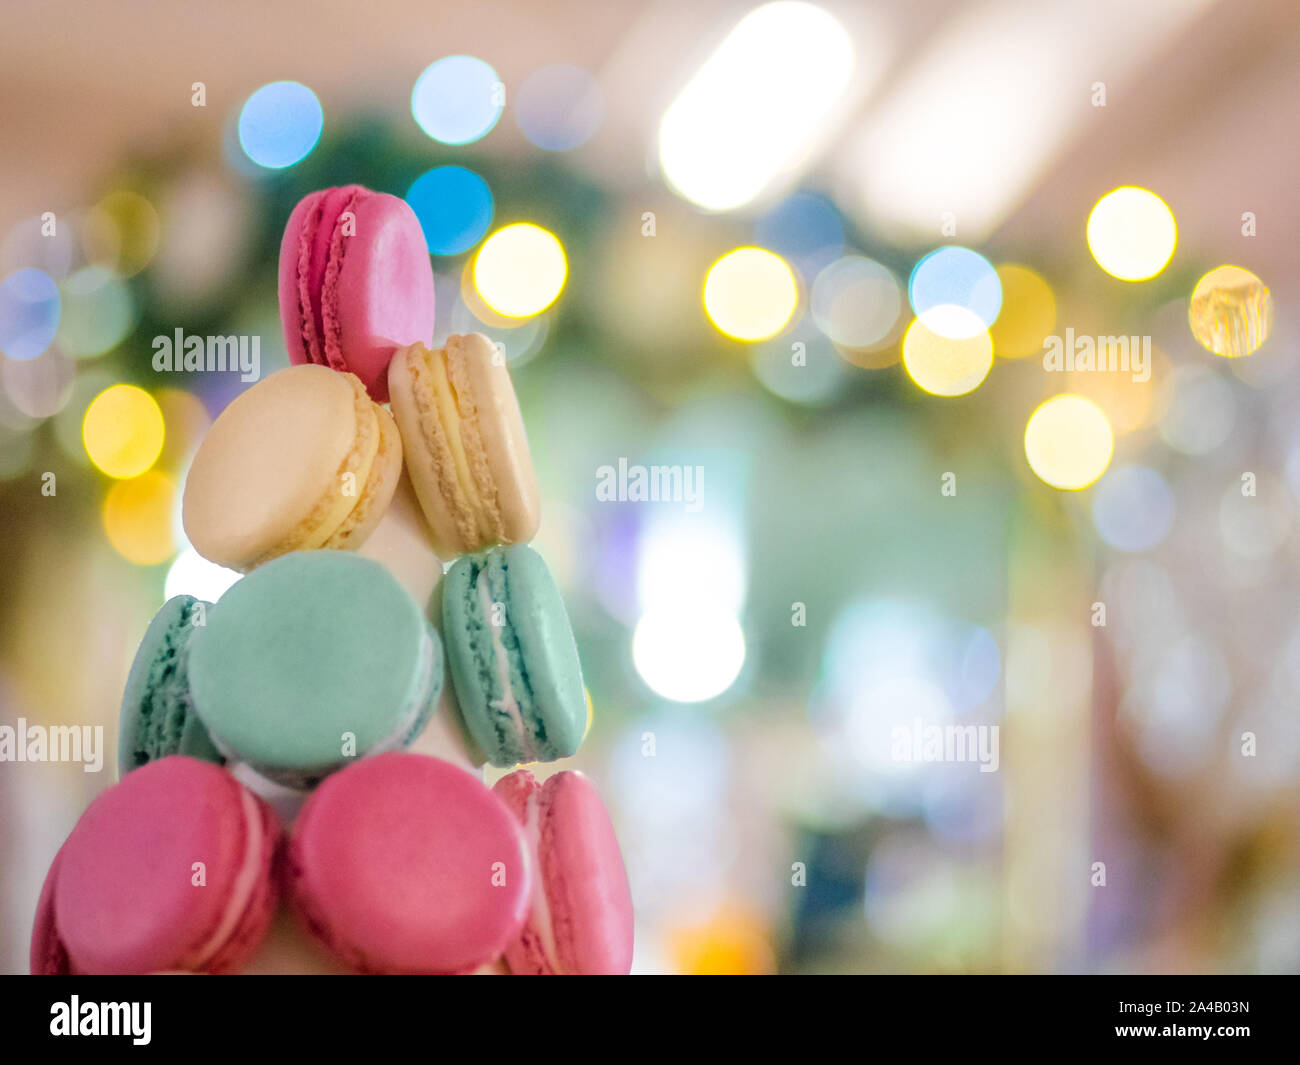 Christmas macaron tower Stock Photo - Alamy